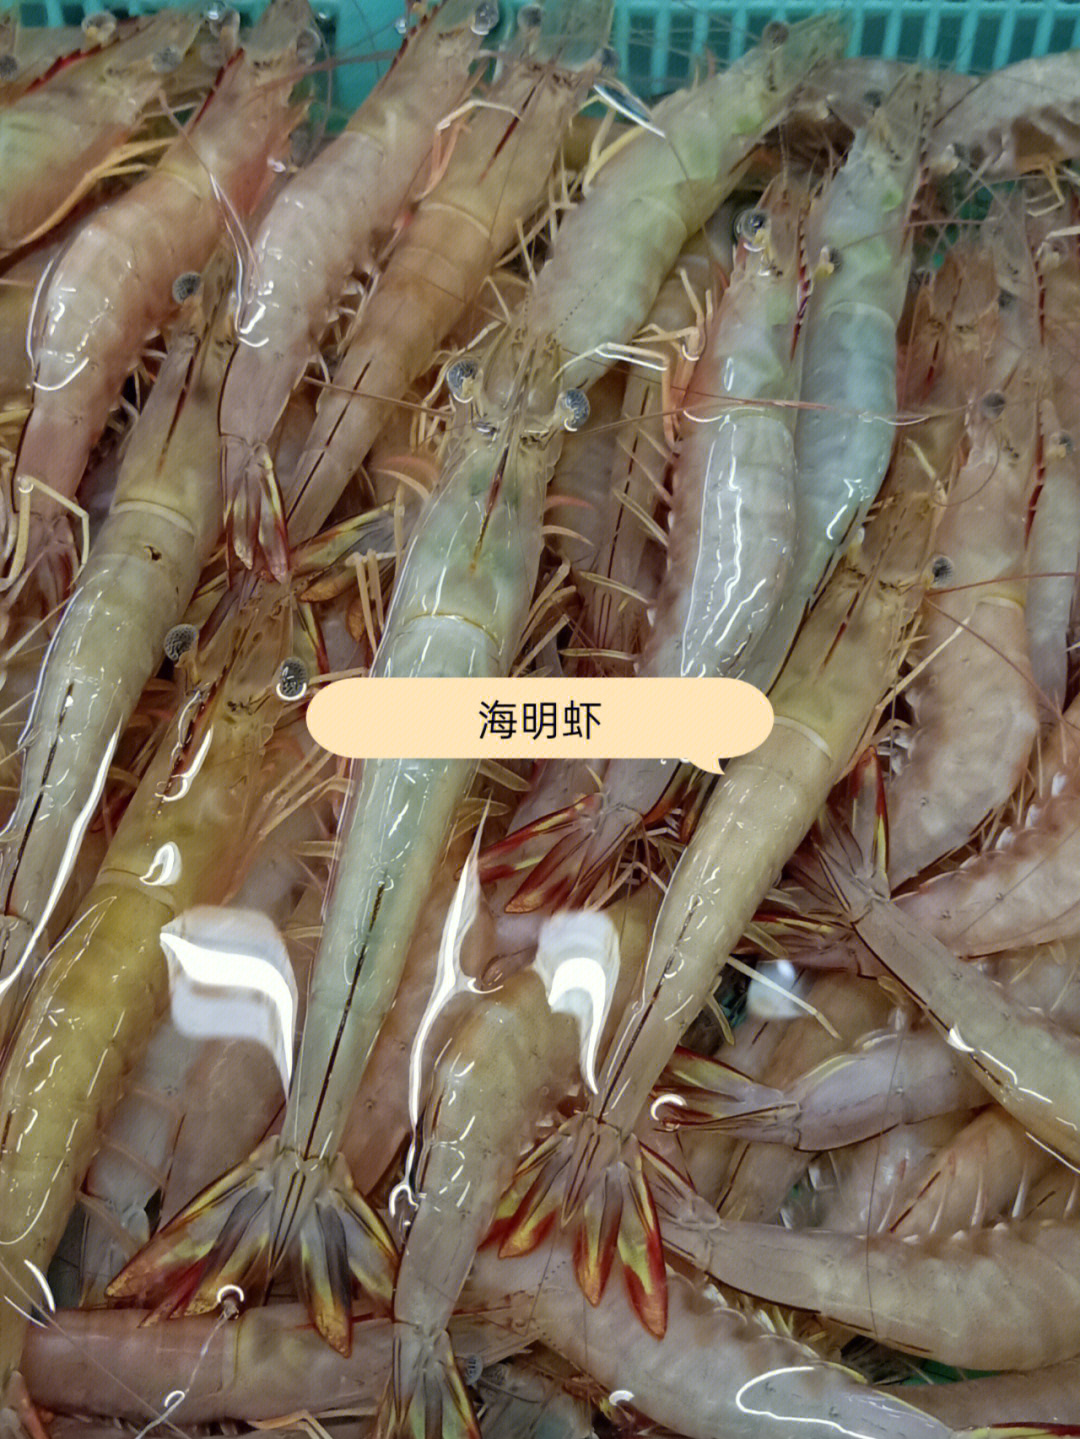 今天海明虾特价55一斤!纯天然海虾,壳薄肉多,肉质嫩滑,营养价值高!